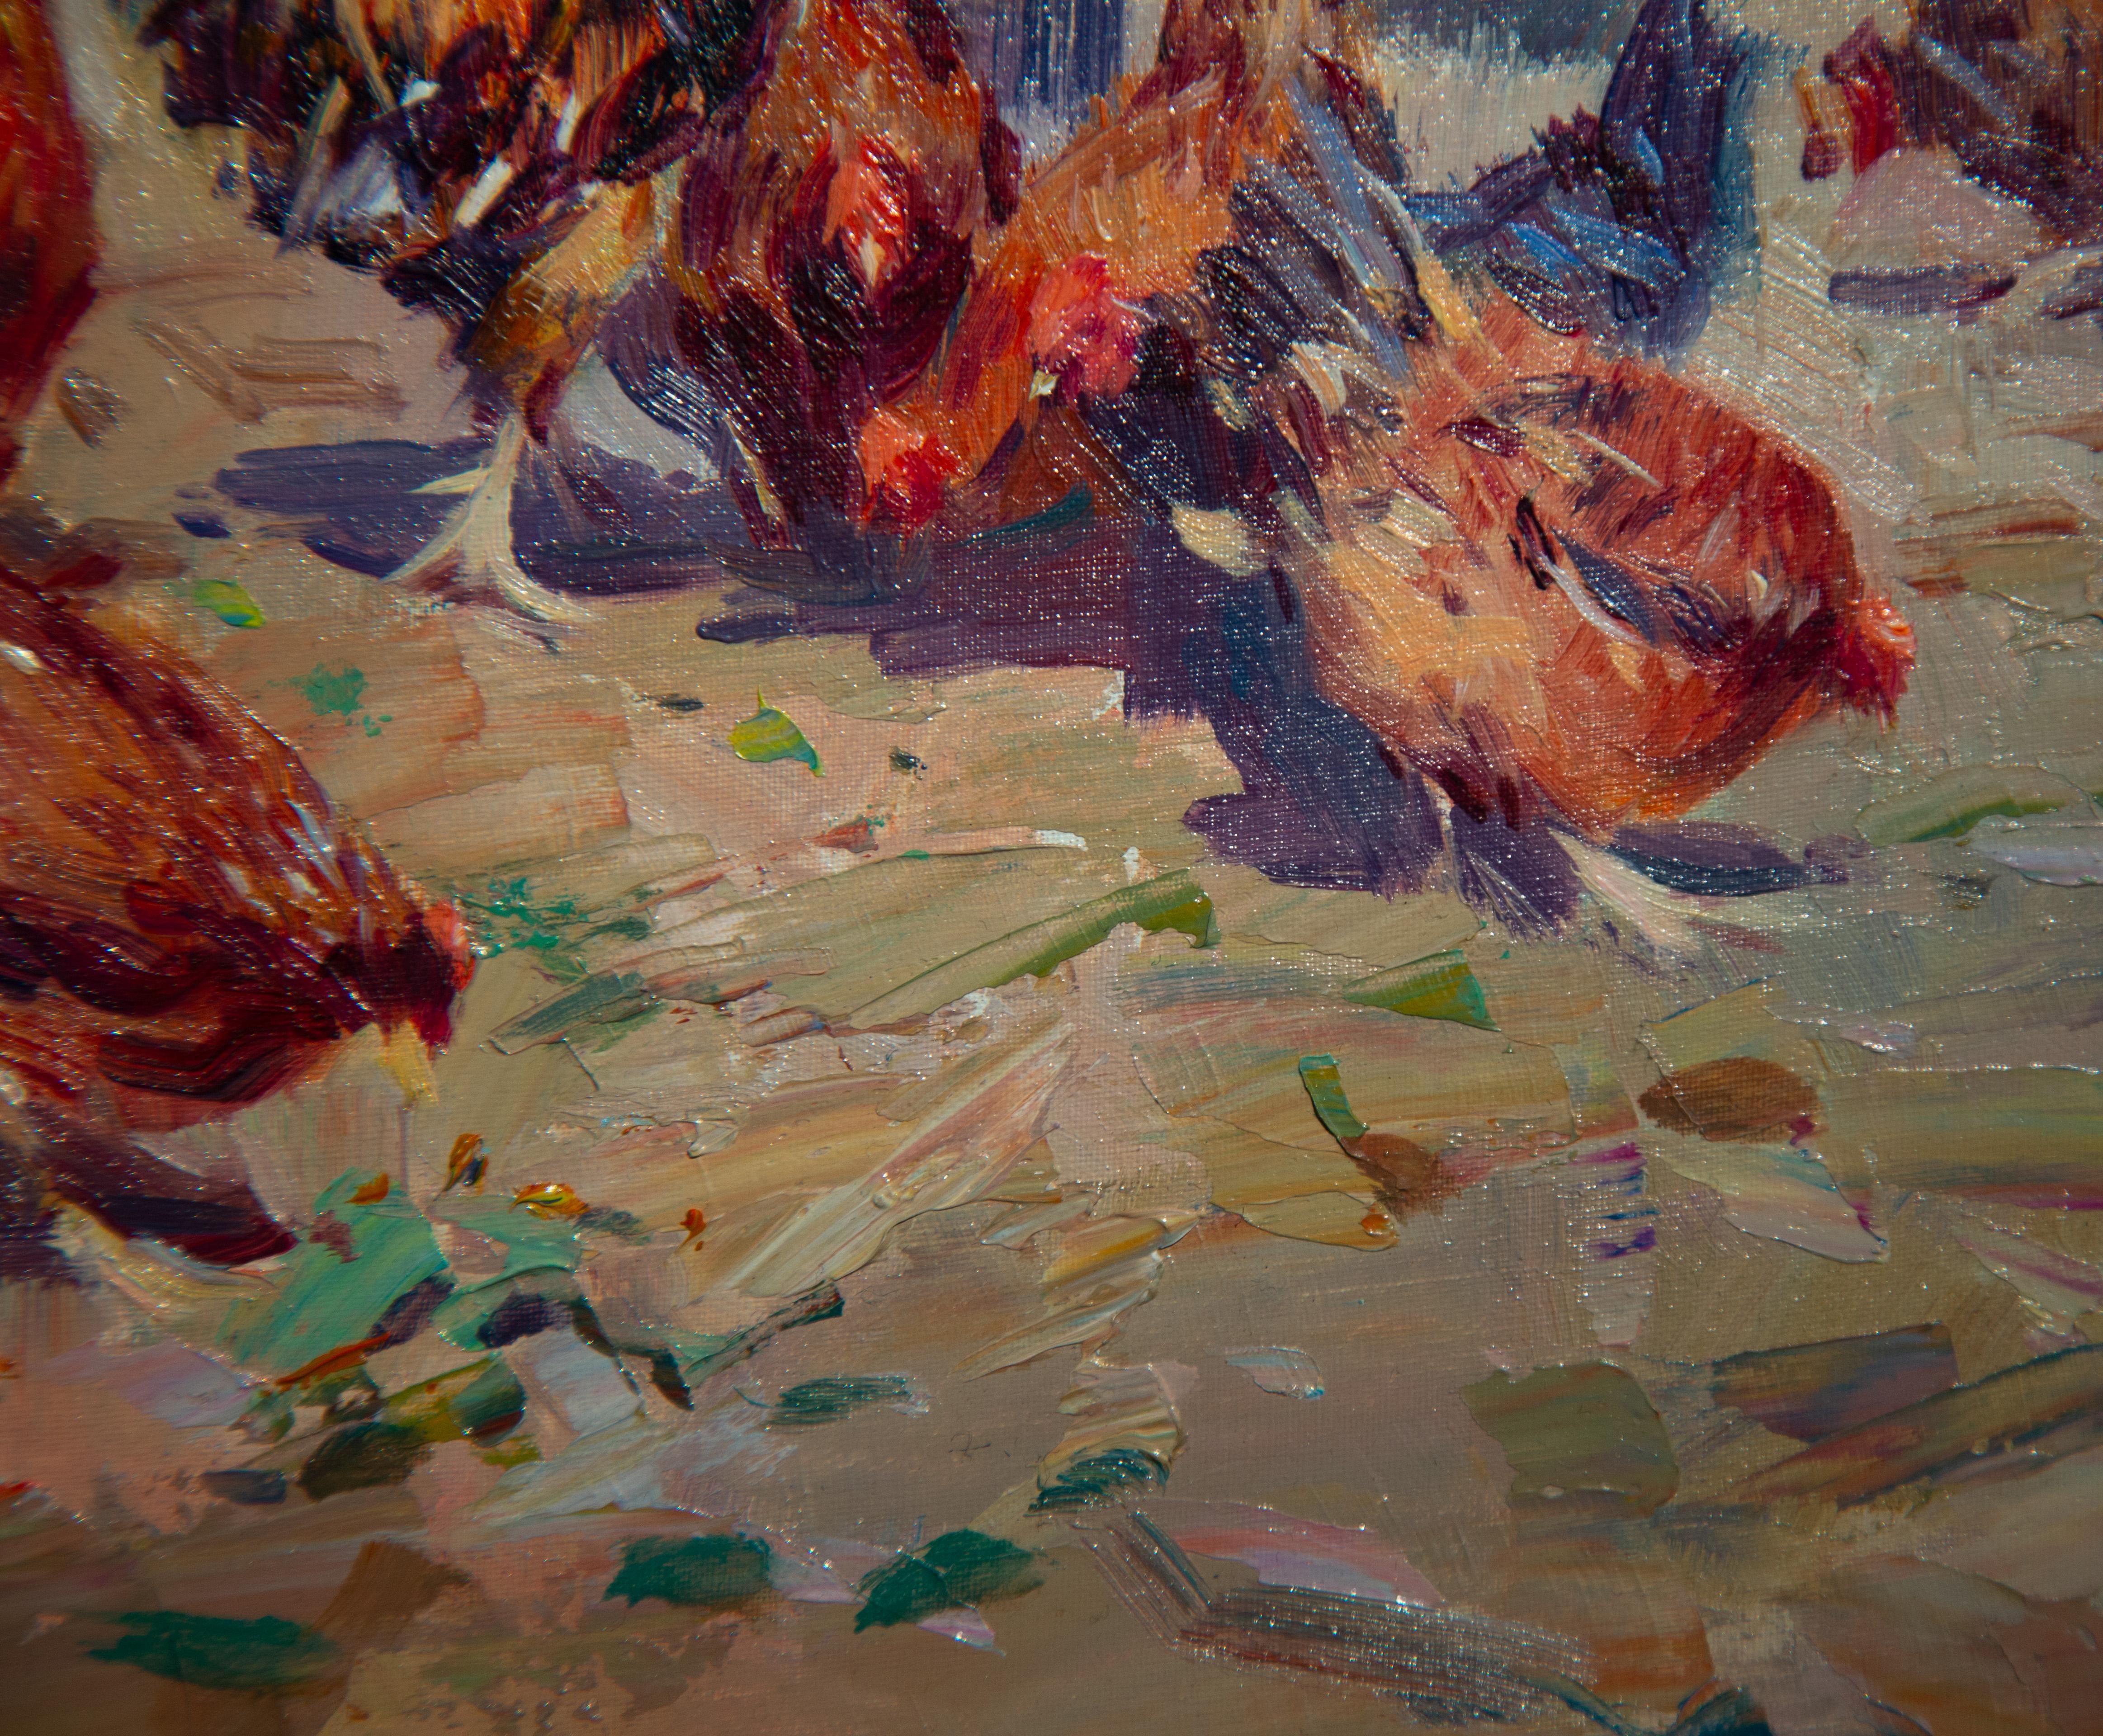 La cour de ferme est un bel exemple de l'œuvre de Calabuig, qui capture la scène étonnante de la cour de ferme avec le poulet et le coq. La magnifique palette de couleurs et l'attention portée aux détails font que cette pièce saute aux yeux.

